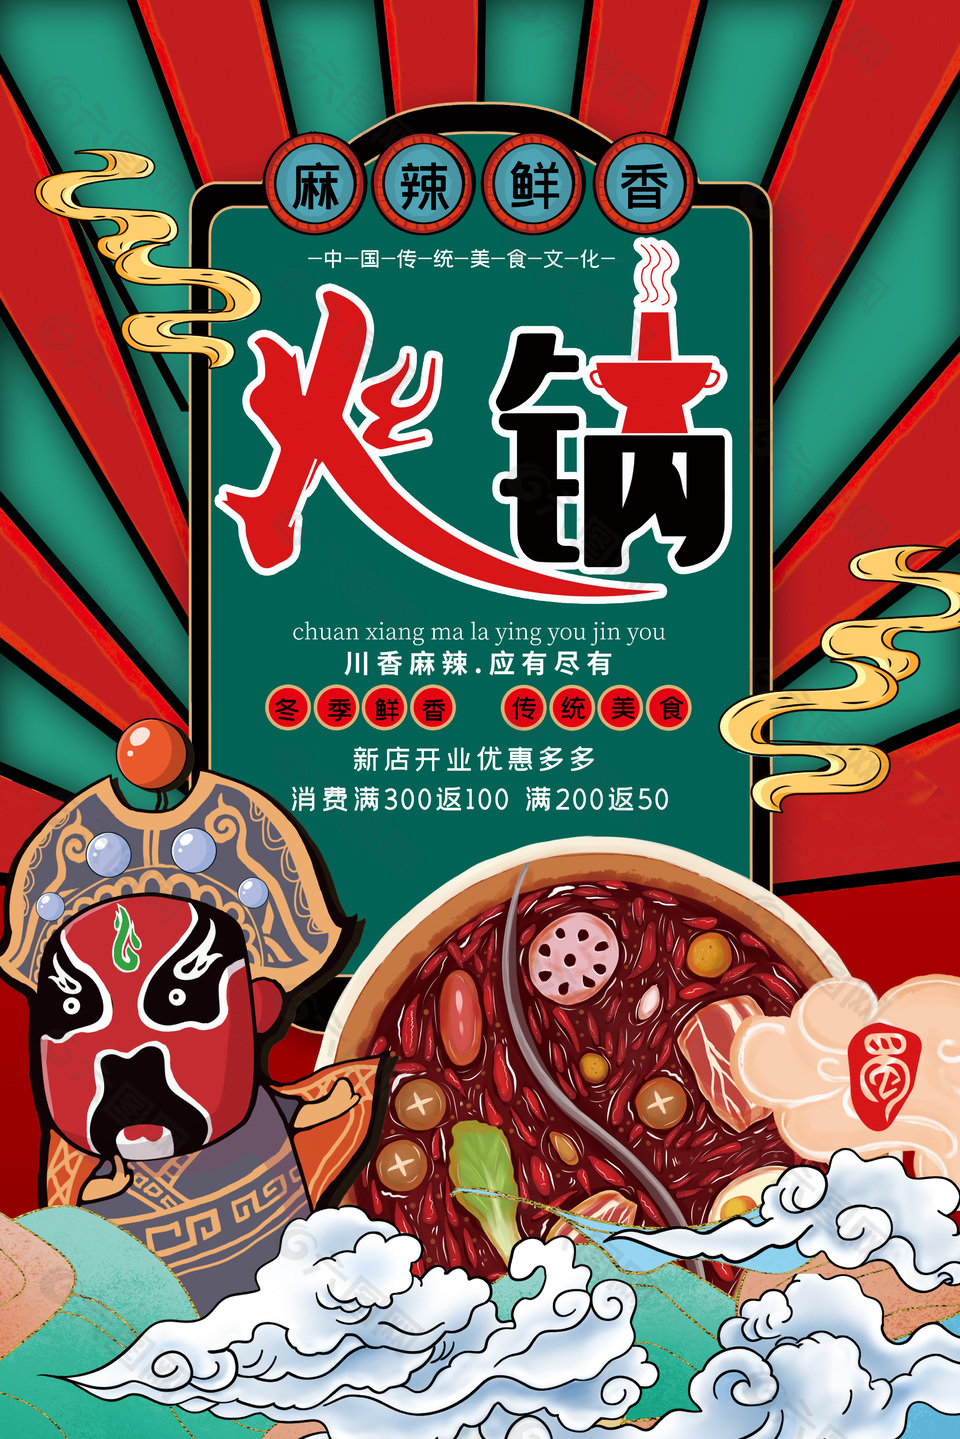 麻辣鲜香火锅传统美食文化大促活动海报设计